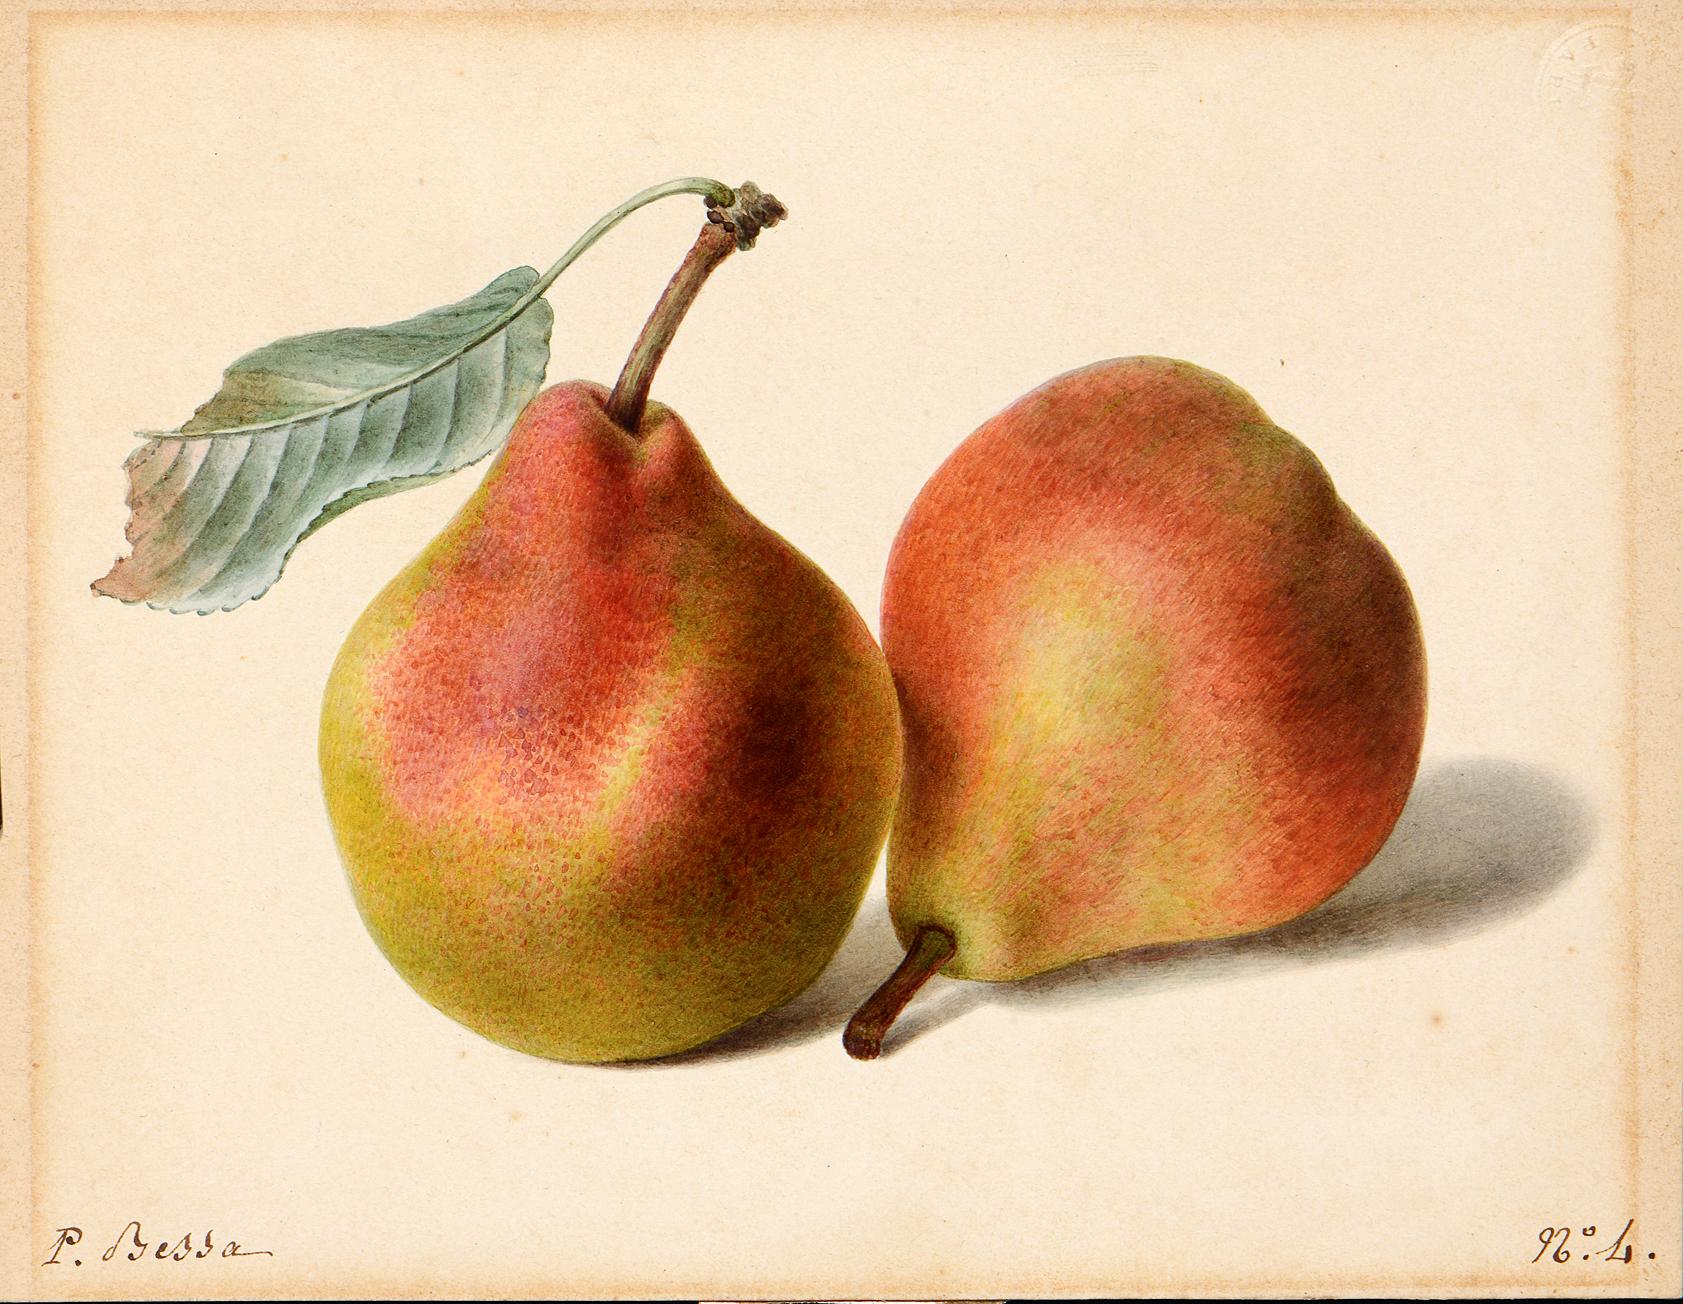 Pancrace BESSA (Paris 1772 - Ecouen 1846) - Two Pears